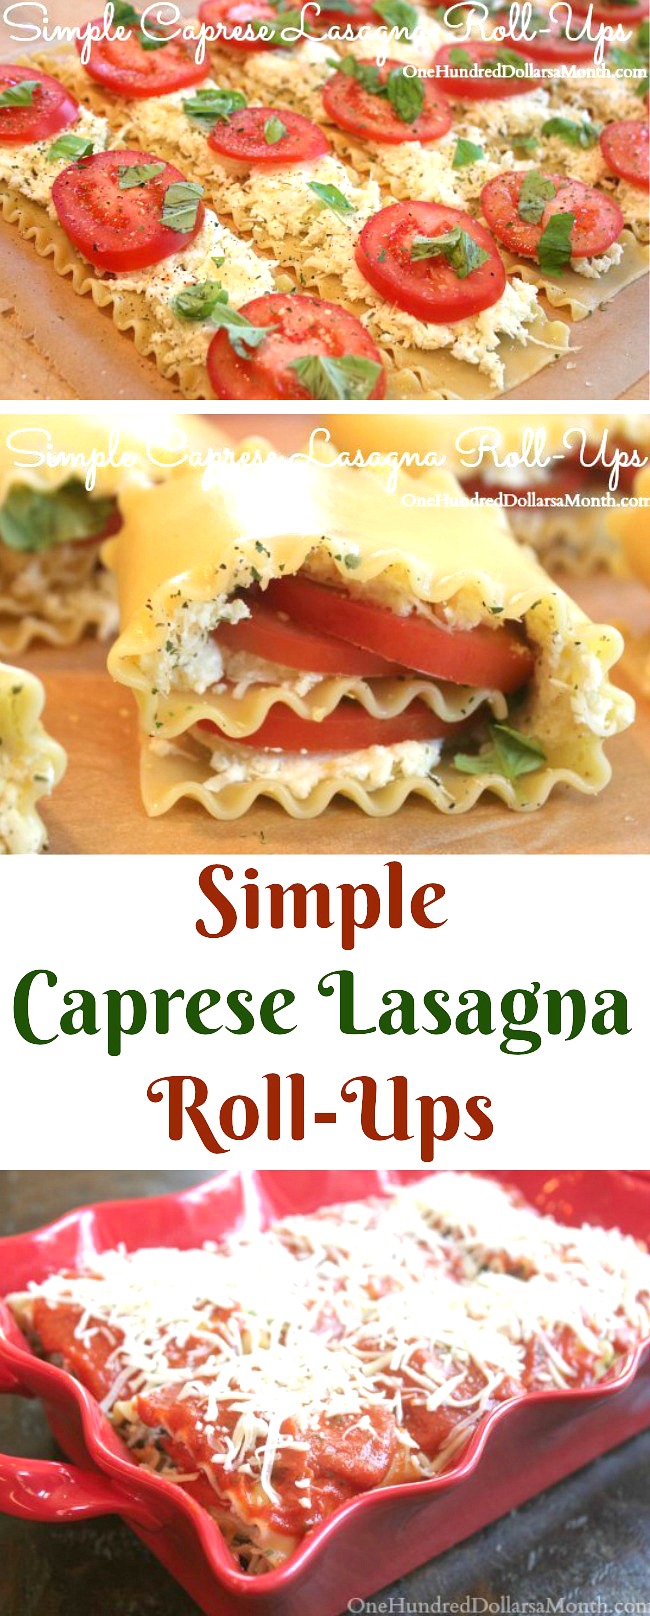 Simple Caprese Lasagna Roll-Ups